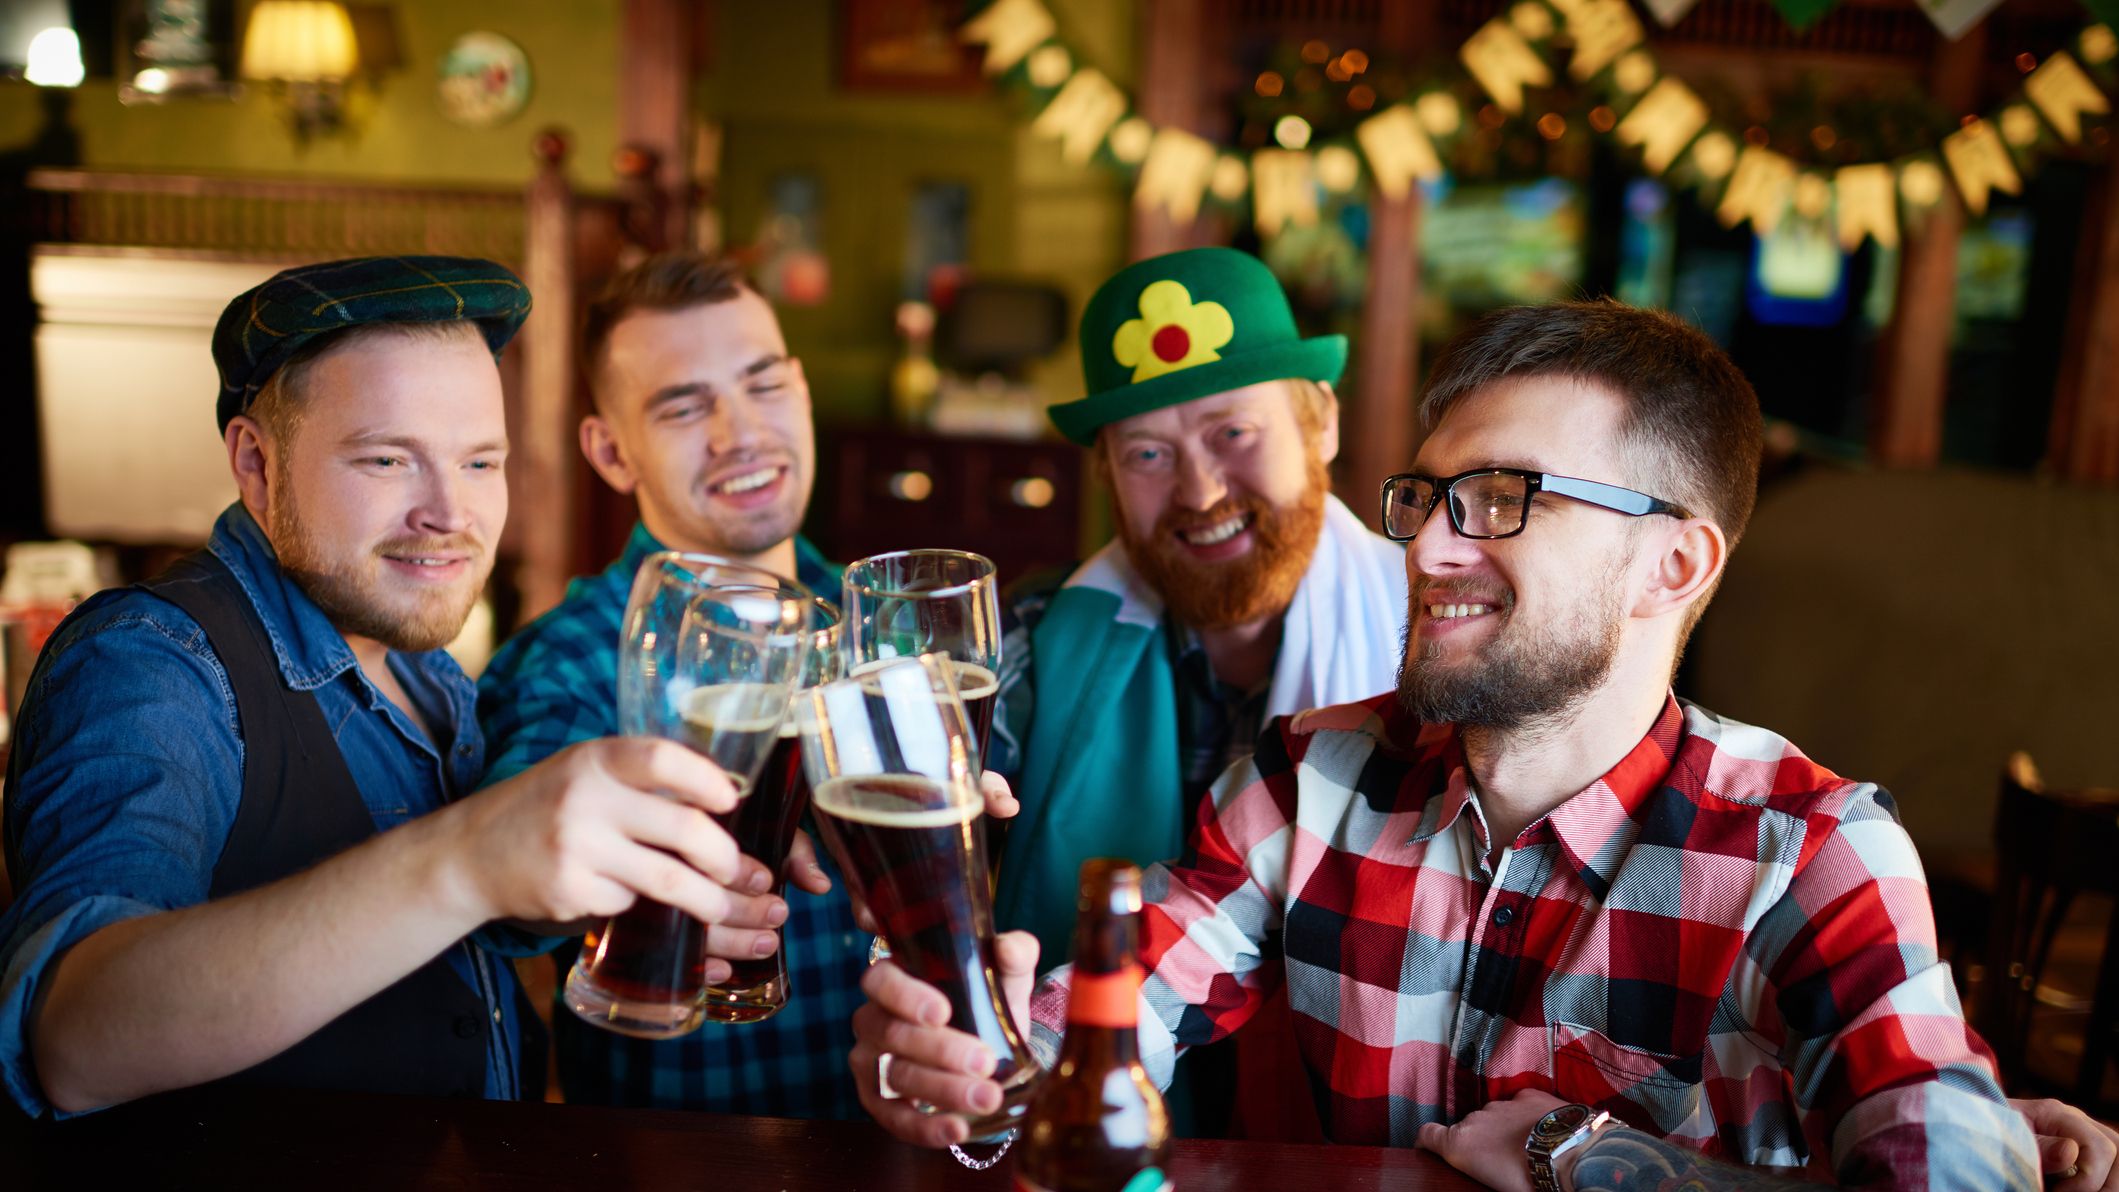 Cerveza Guinness Draught • Cervexxa Cervezas Irlandesas